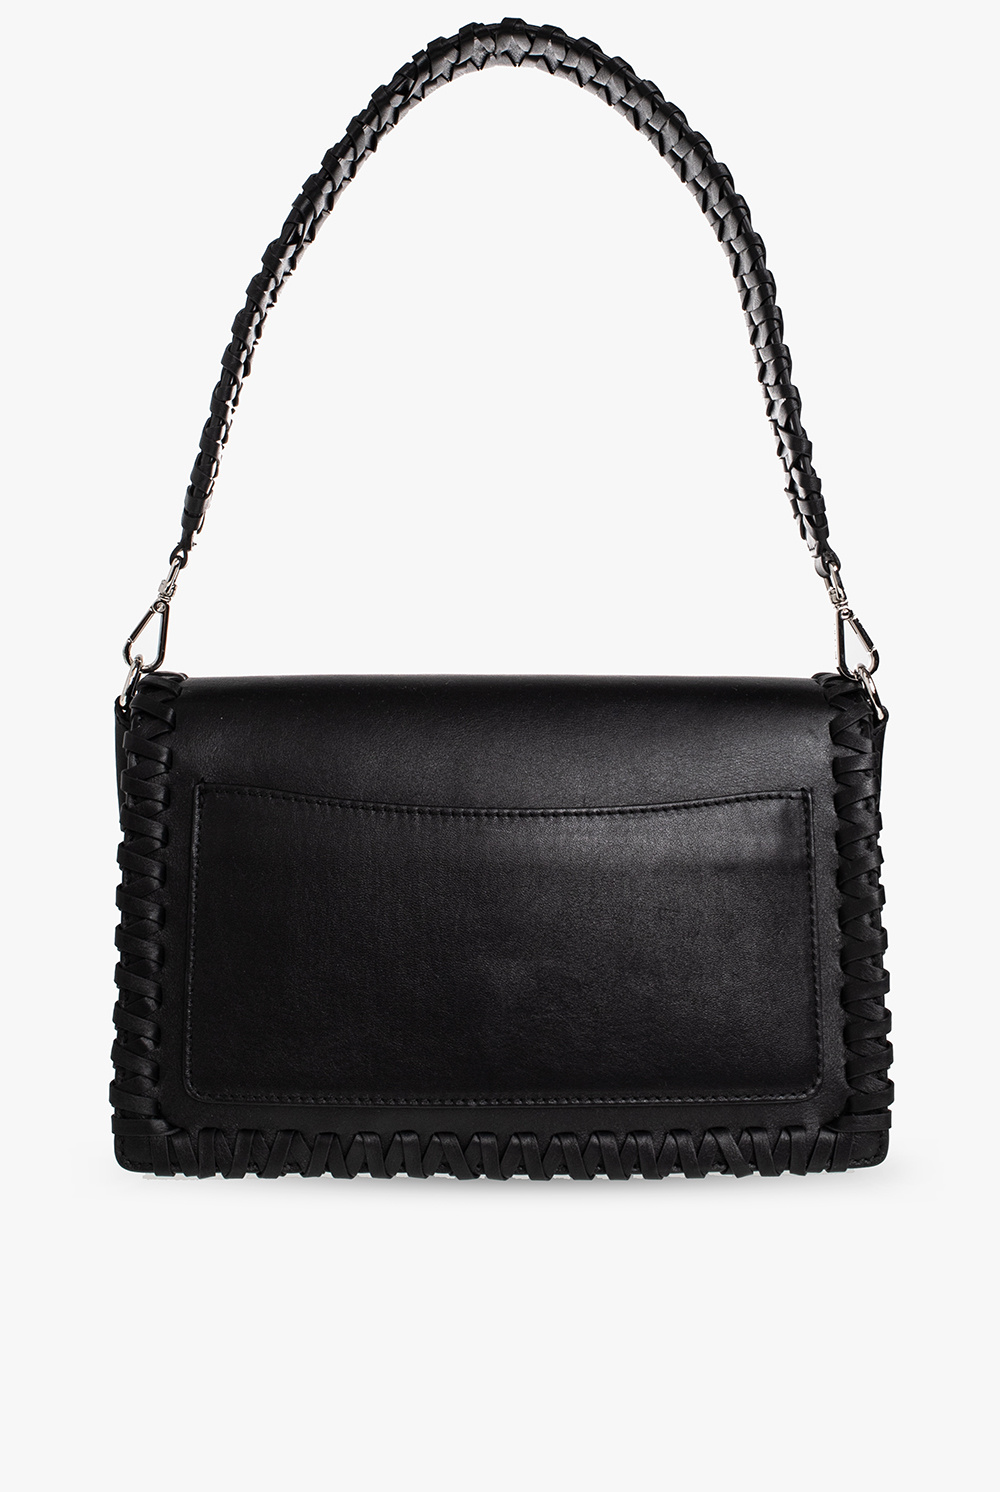 Etro Leather Flap bag